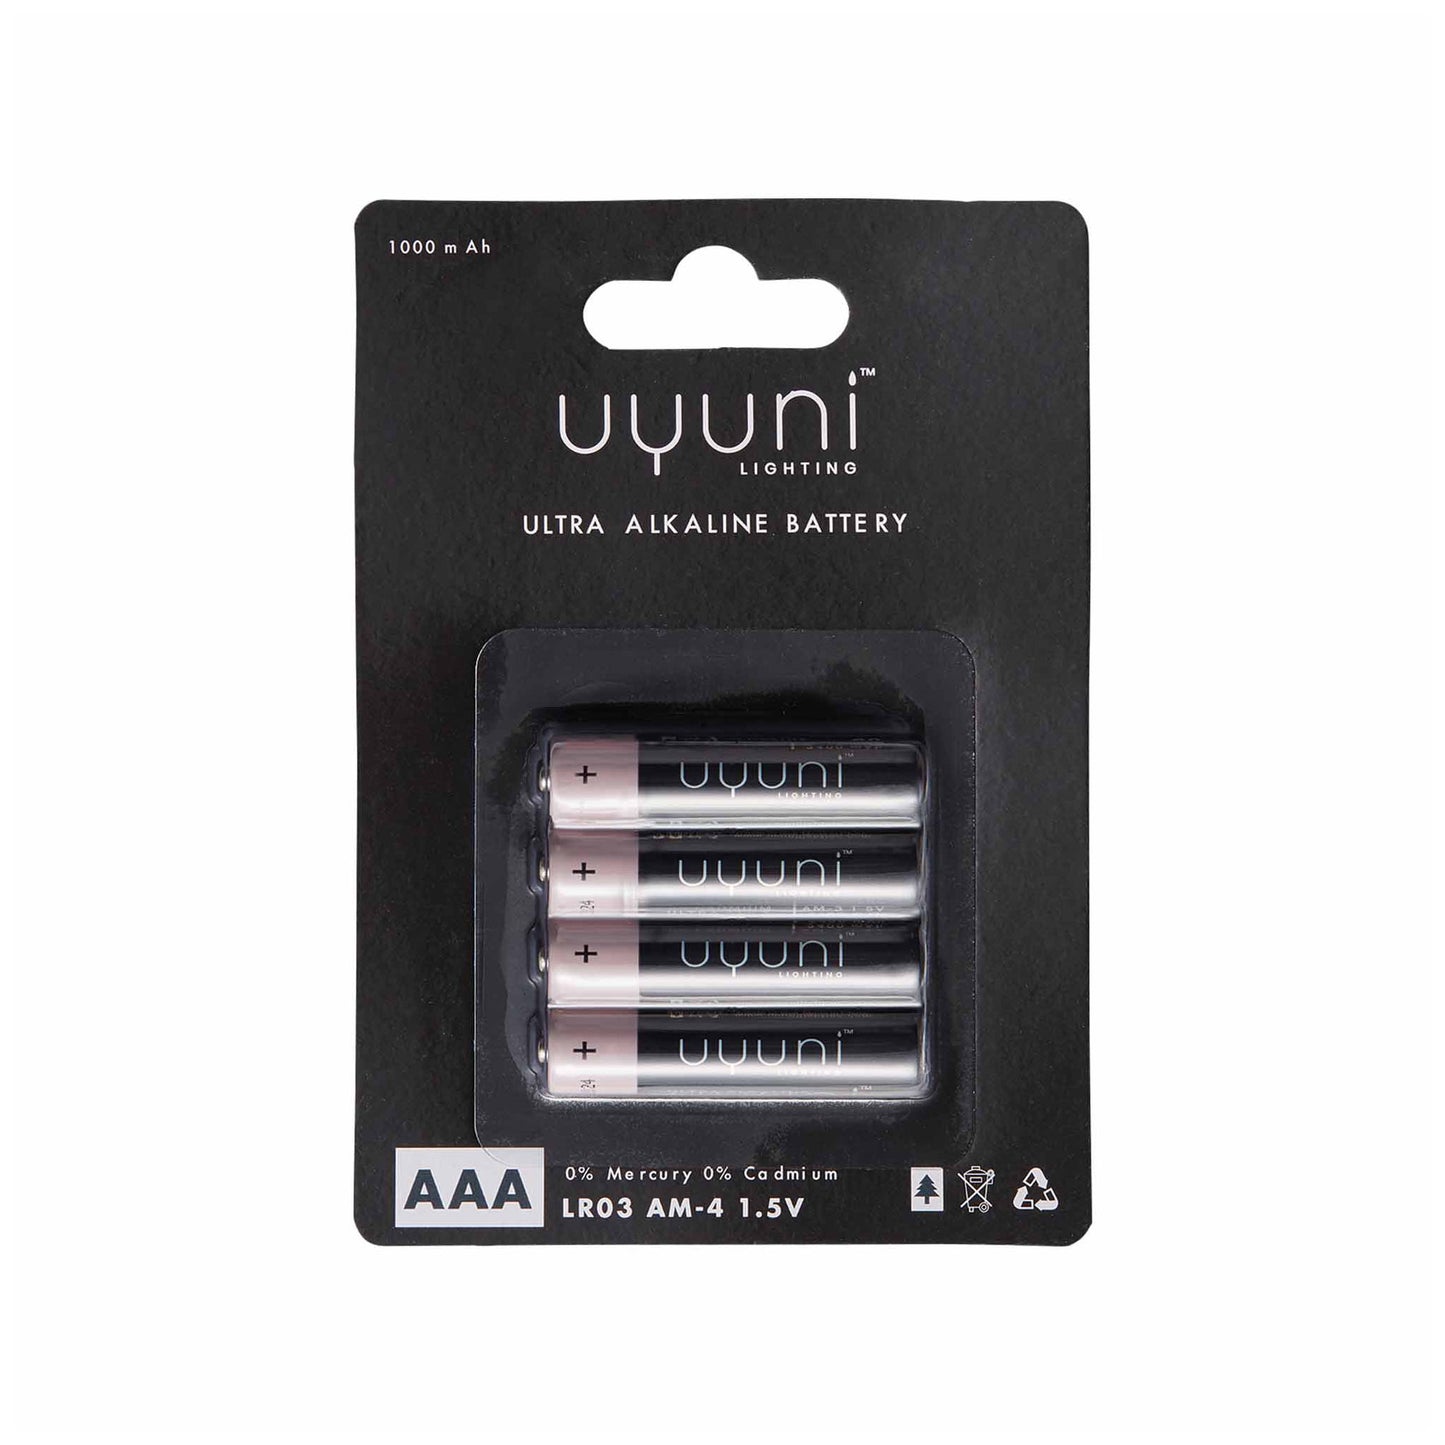 AAA batterier til Uyuni lys, 25 kr.